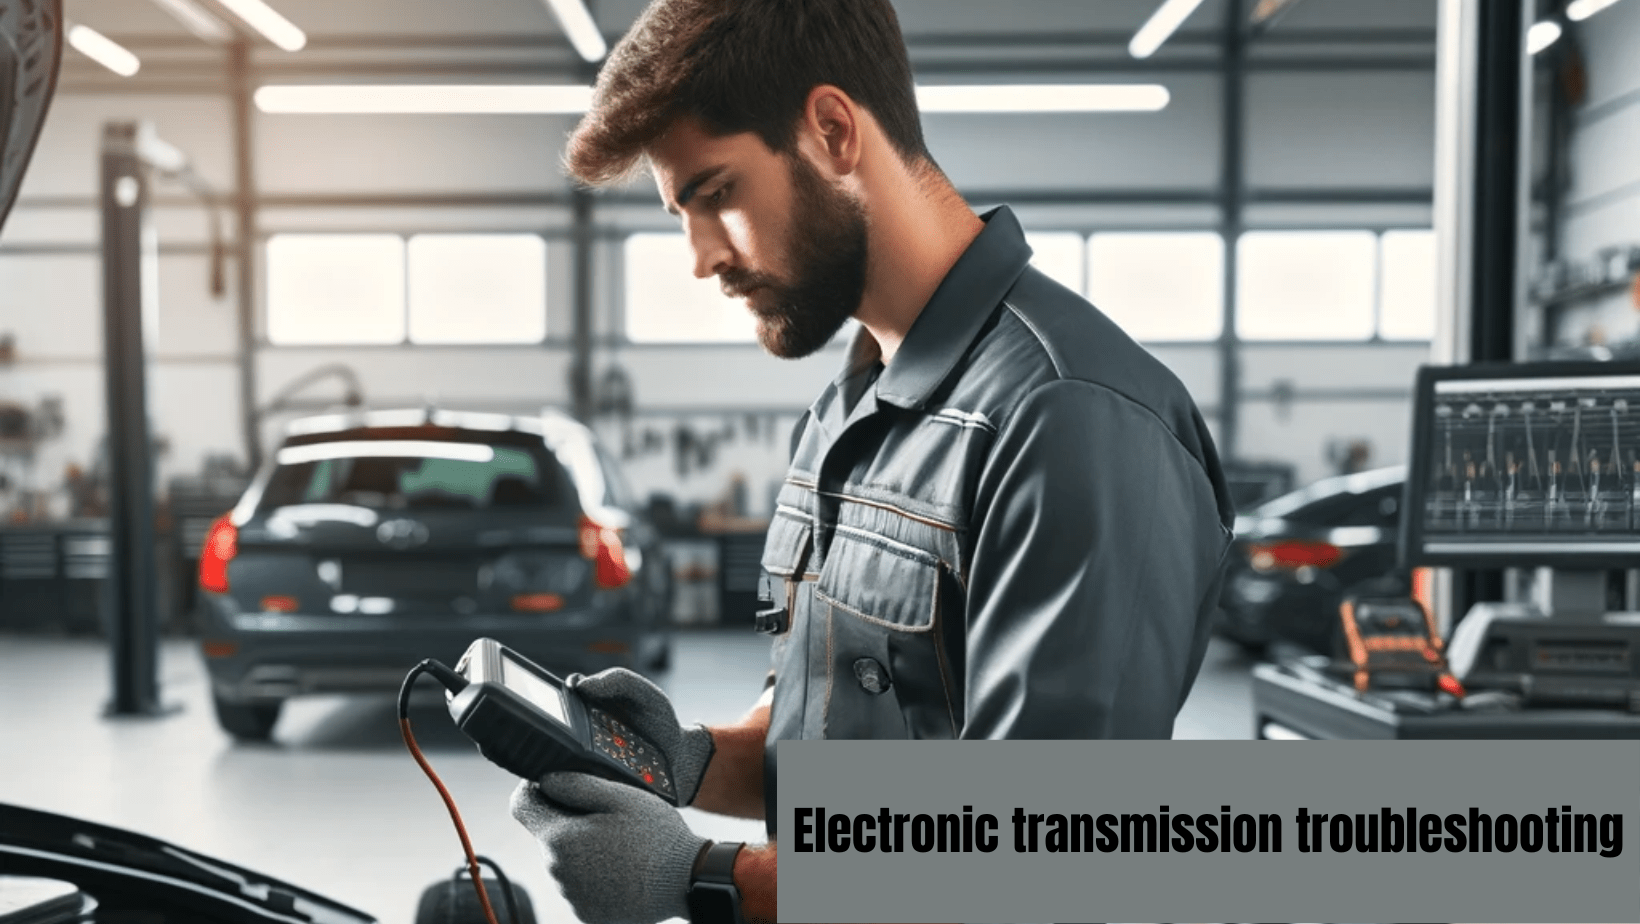 Electronic transmission troubleshooting